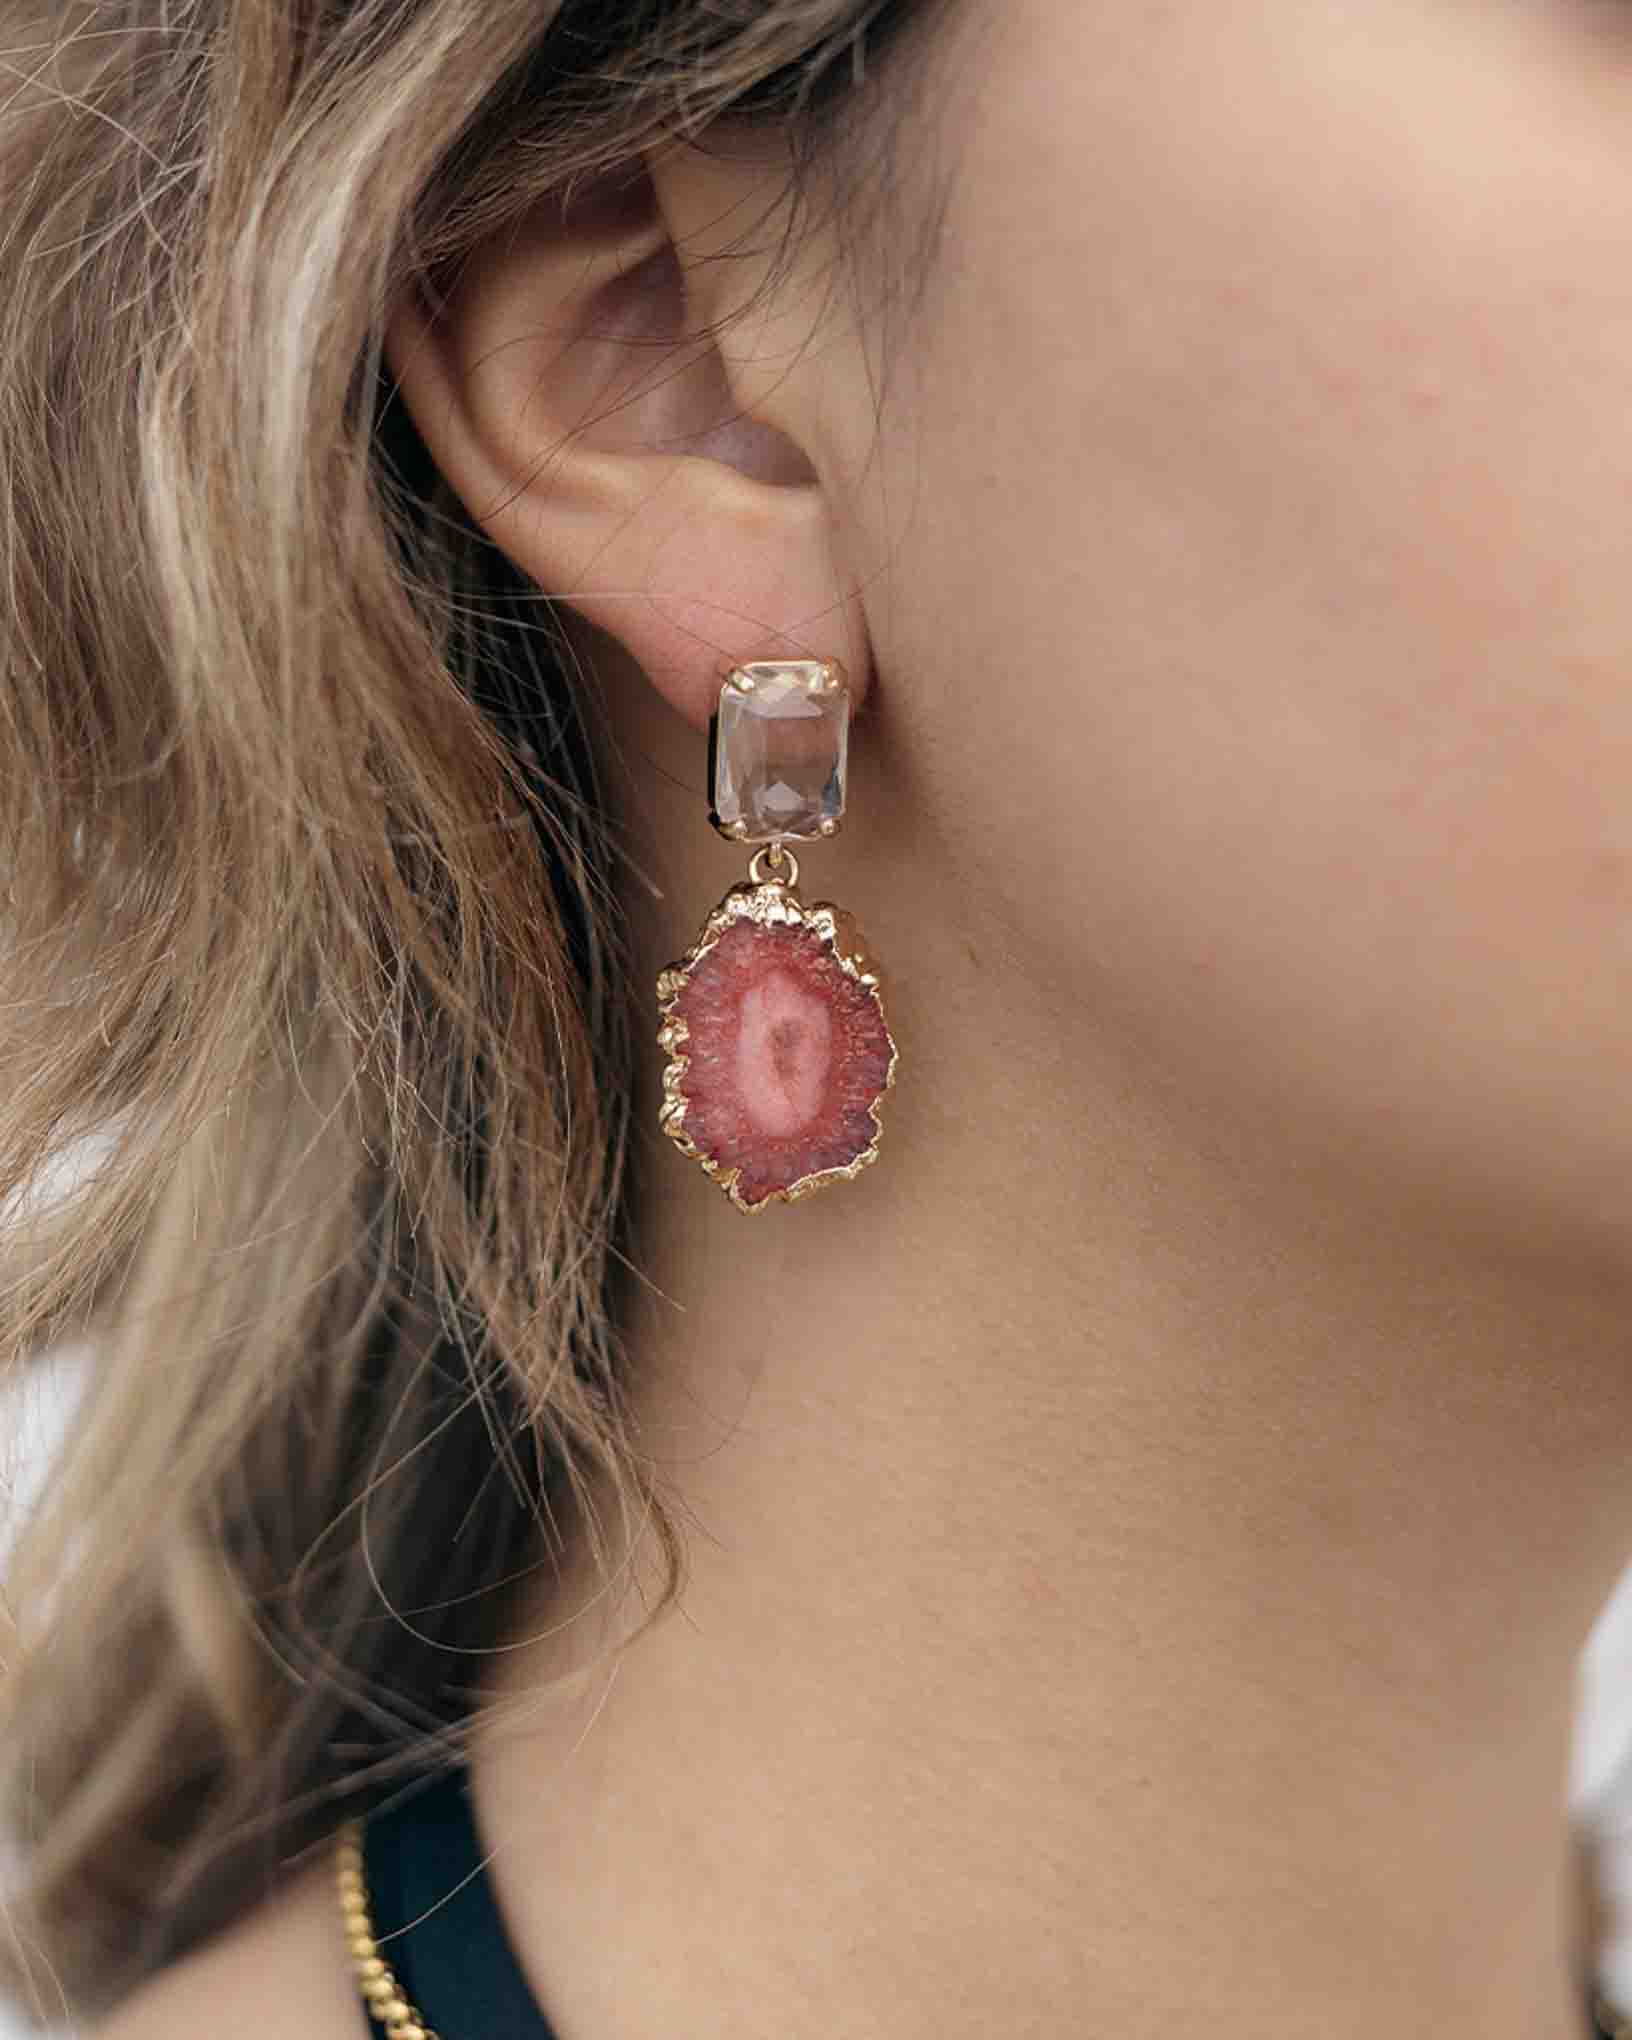 Ohrring Marte aus der Kollektion Galassia von Donna Rachele Jewelry